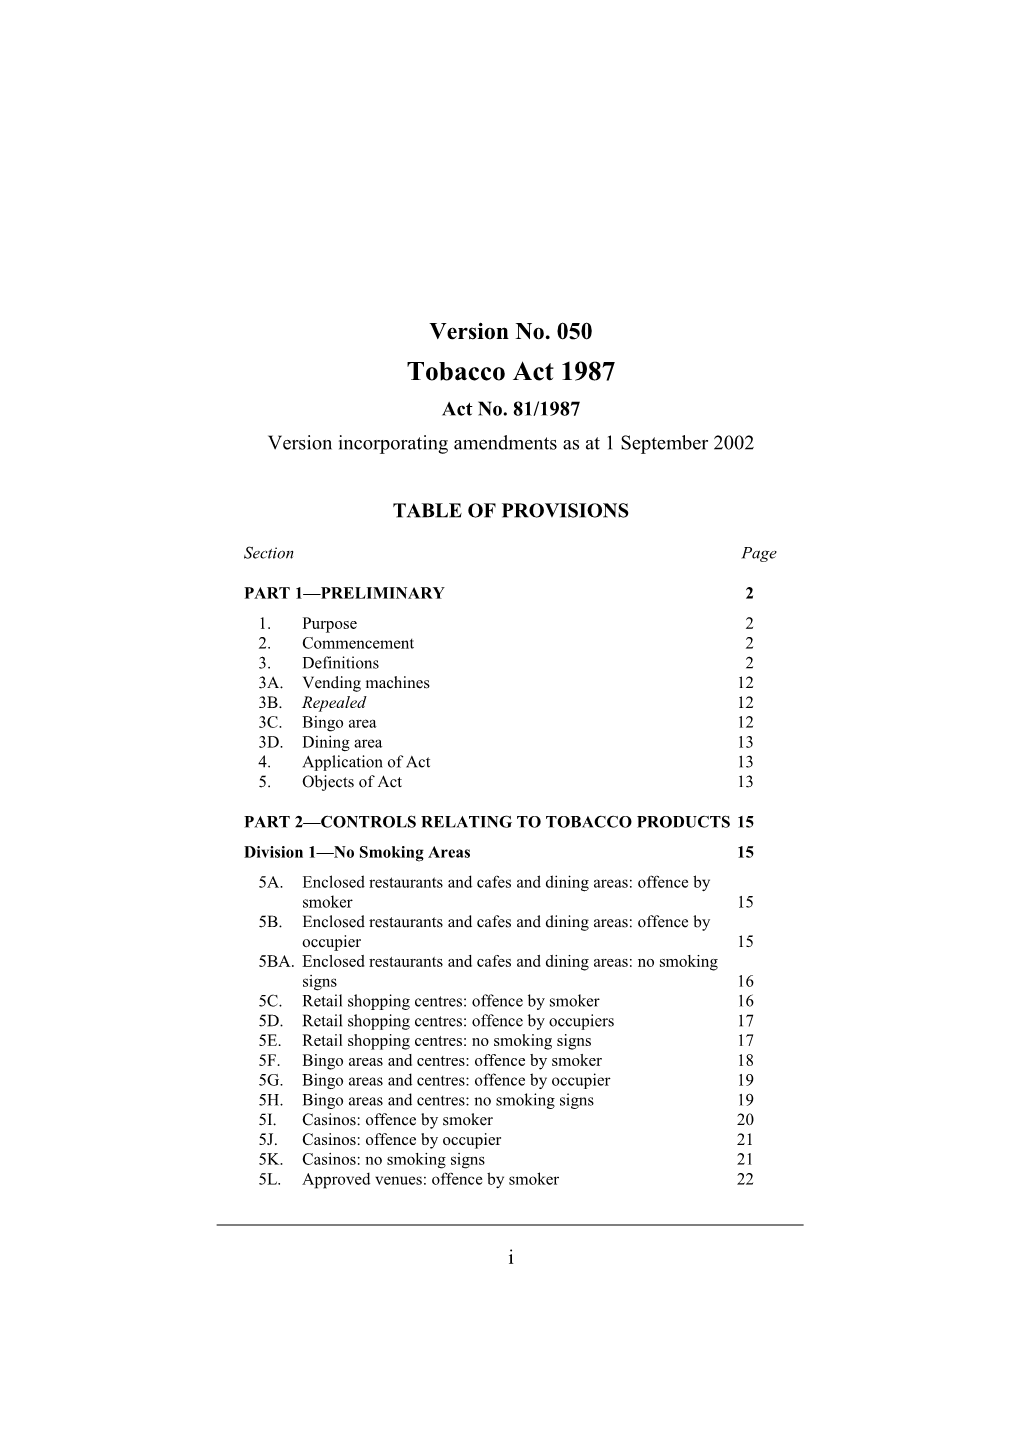 Version Incorporating Amendments As at 1 September 2002